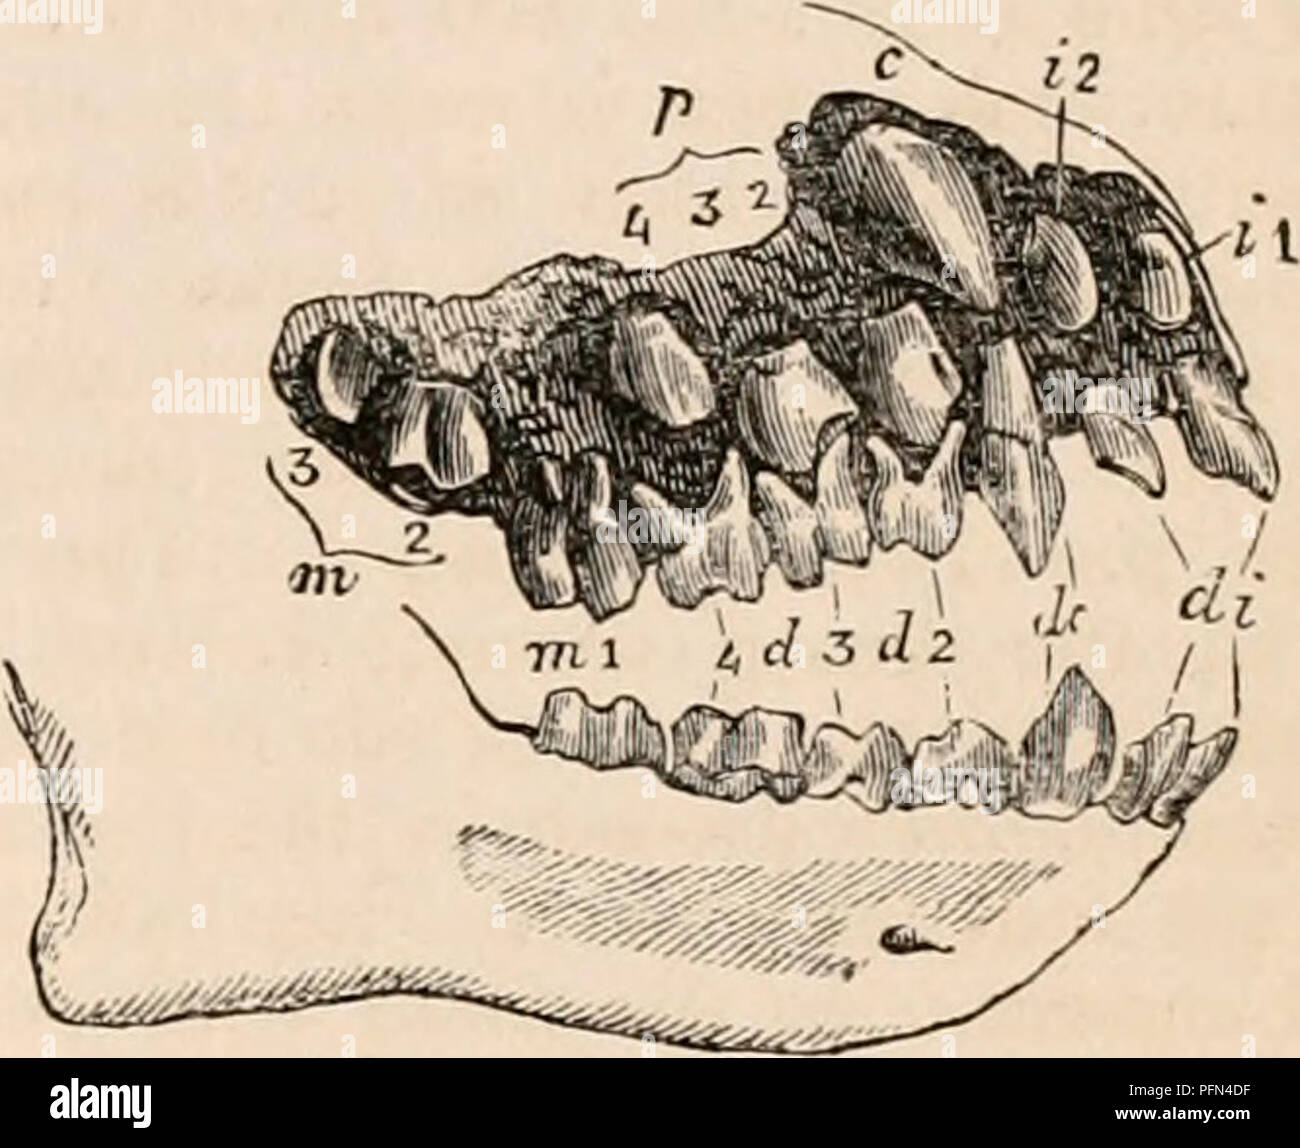 . La cyclopaedia d'anatomie et physiologie. Anatomie ; physiologie ; Zoologie. Les dents. 921 seulement dans les petites molaires chimpanzé aussi grande que la dent correspondante dans les variétés noires du sujet humain, dans la plupart, en particulier les Australiens, le vrai molaires à atteindre des dimensions plus grandes que dans les races jaune ou blanc. Les quatre principaux cuspides, surtout les deux internes, de la première molaire des deux espèces de chimpanzés sont plus pointu et prolongée que dans l'homme ; une cinquième petite cuspide est développé derrière la paire extérieure, comme dans les orangs et les Gibbons, mais est inférieur à celui de l'homme. L Banque D'Images